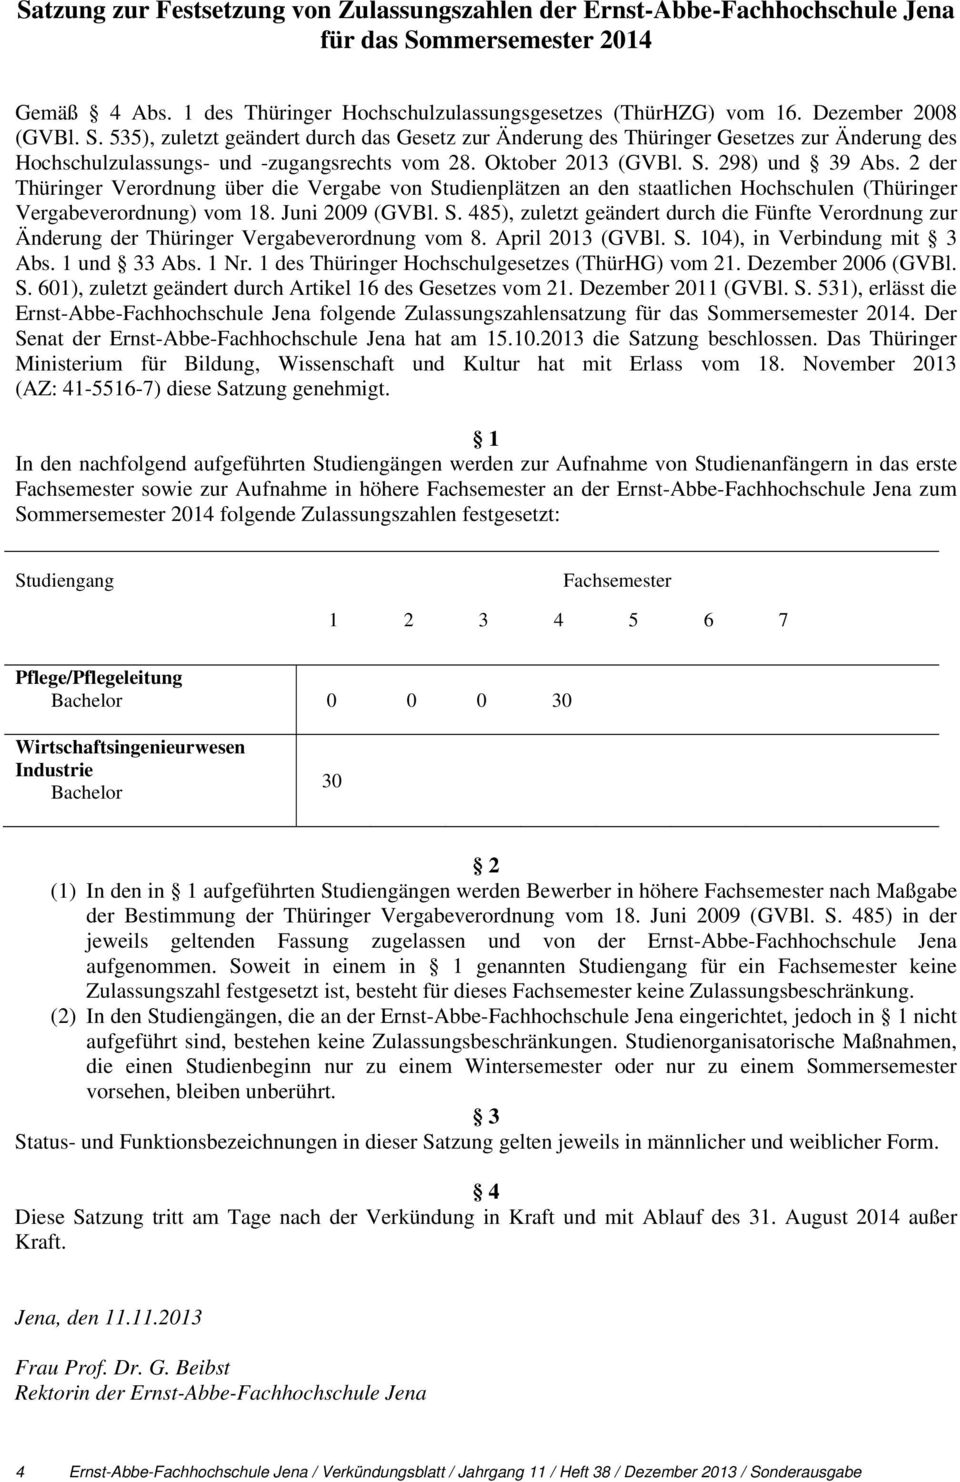 2 der Thüringer Verordnung über die Vergabe von Studienplätzen an den staatlichen Hochschulen (Thüringer Vergabeverordnung) vom 18. Juni 2009 (GVBl. S. 485), zuletzt geändert durch die Fünfte Verordnung zur Änderung der Thüringer Vergabeverordnung vom 8.